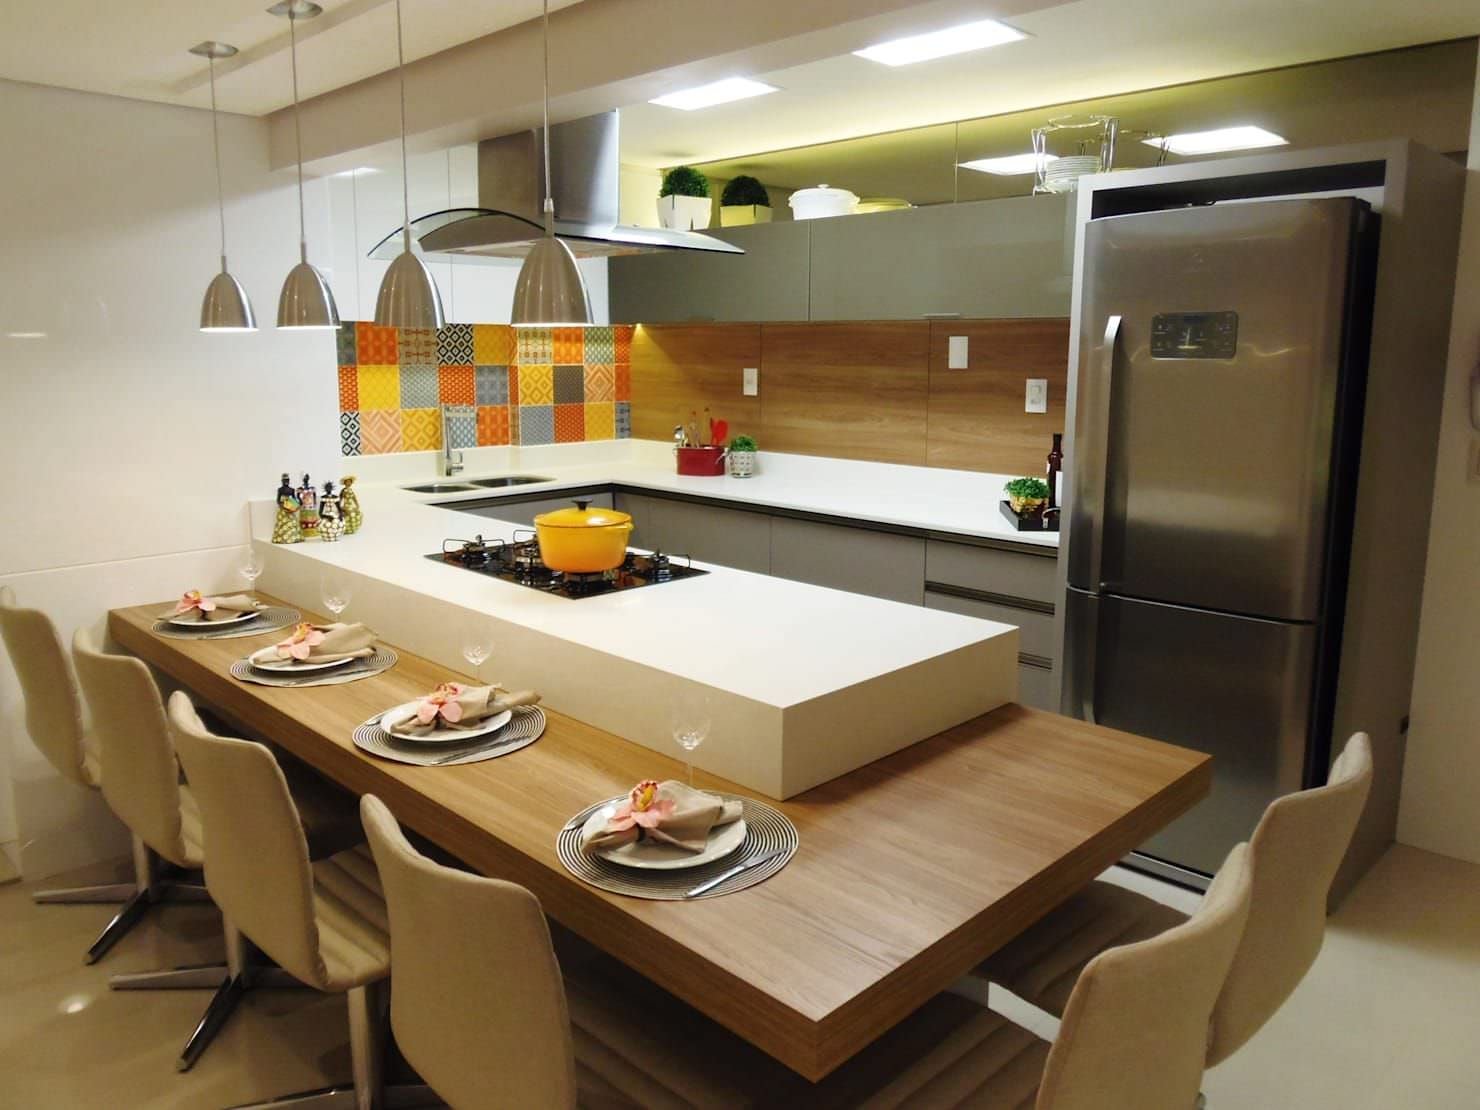 Cucina con isola inglobata in un mobile, disposto lungo un piano in legno. Idee cucine con penisola